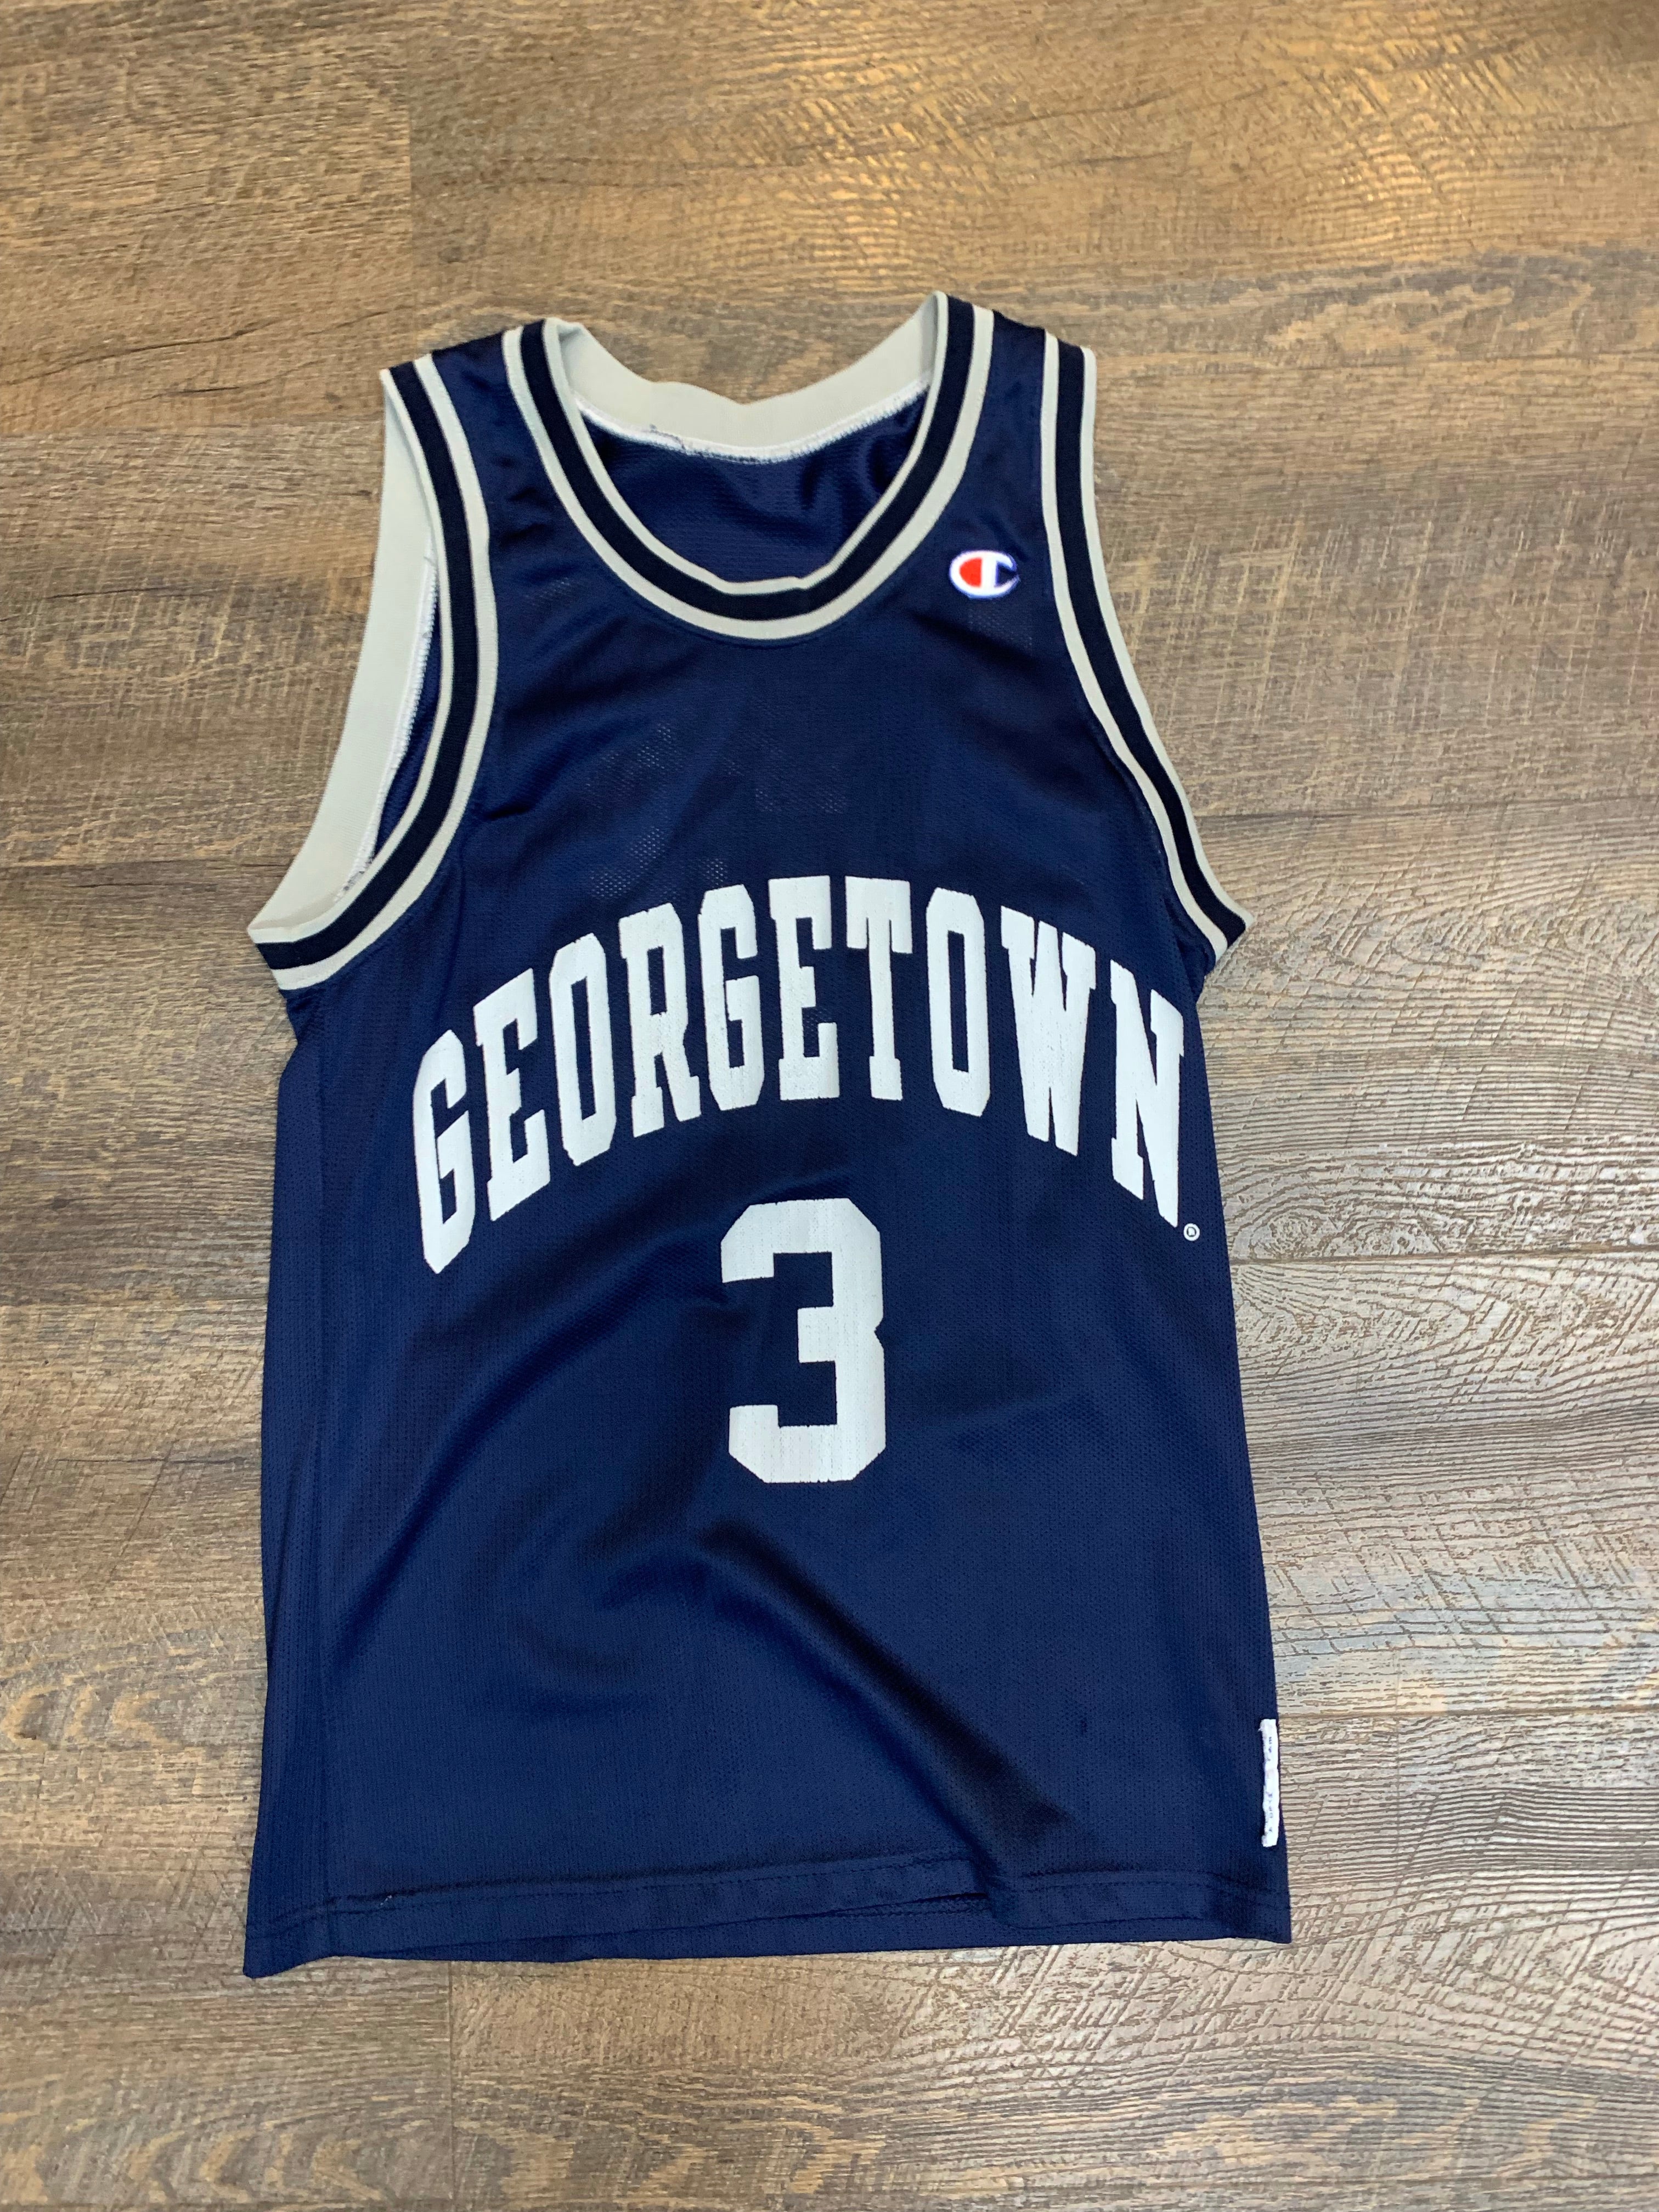 Georgetown Iverson (Champion